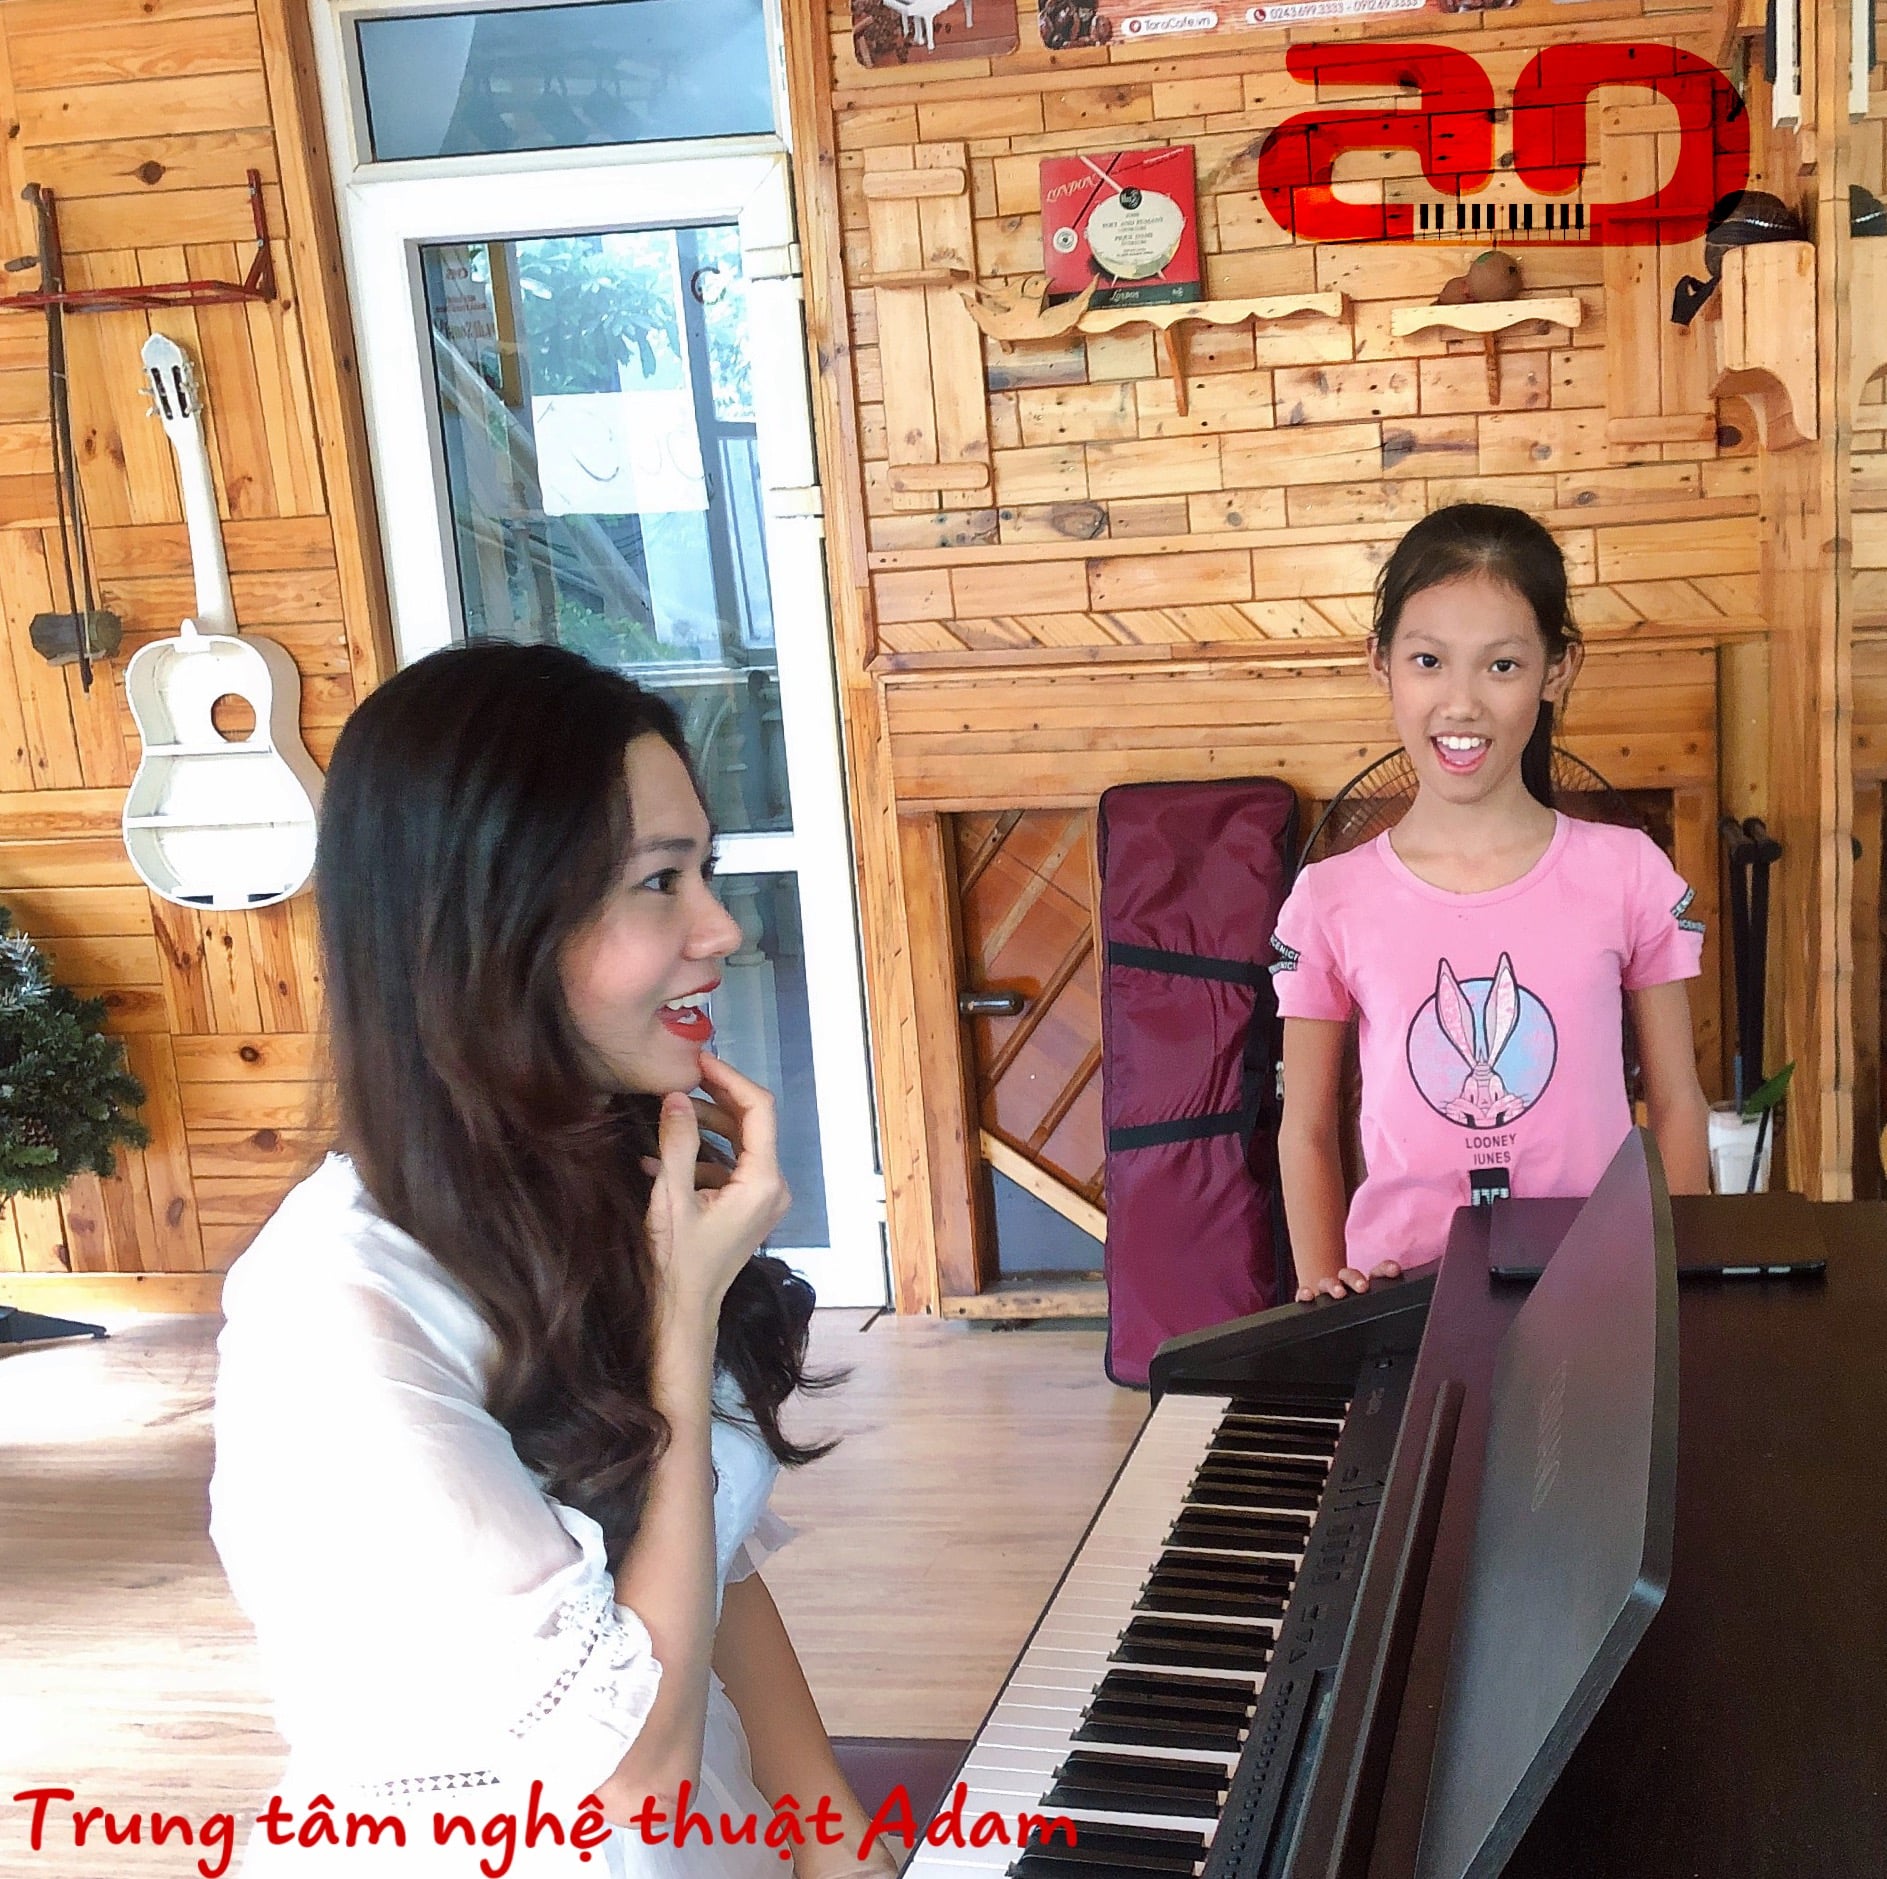 khóa học thanh nhạc cùng cô Hồng Nhung tại ttnt adam